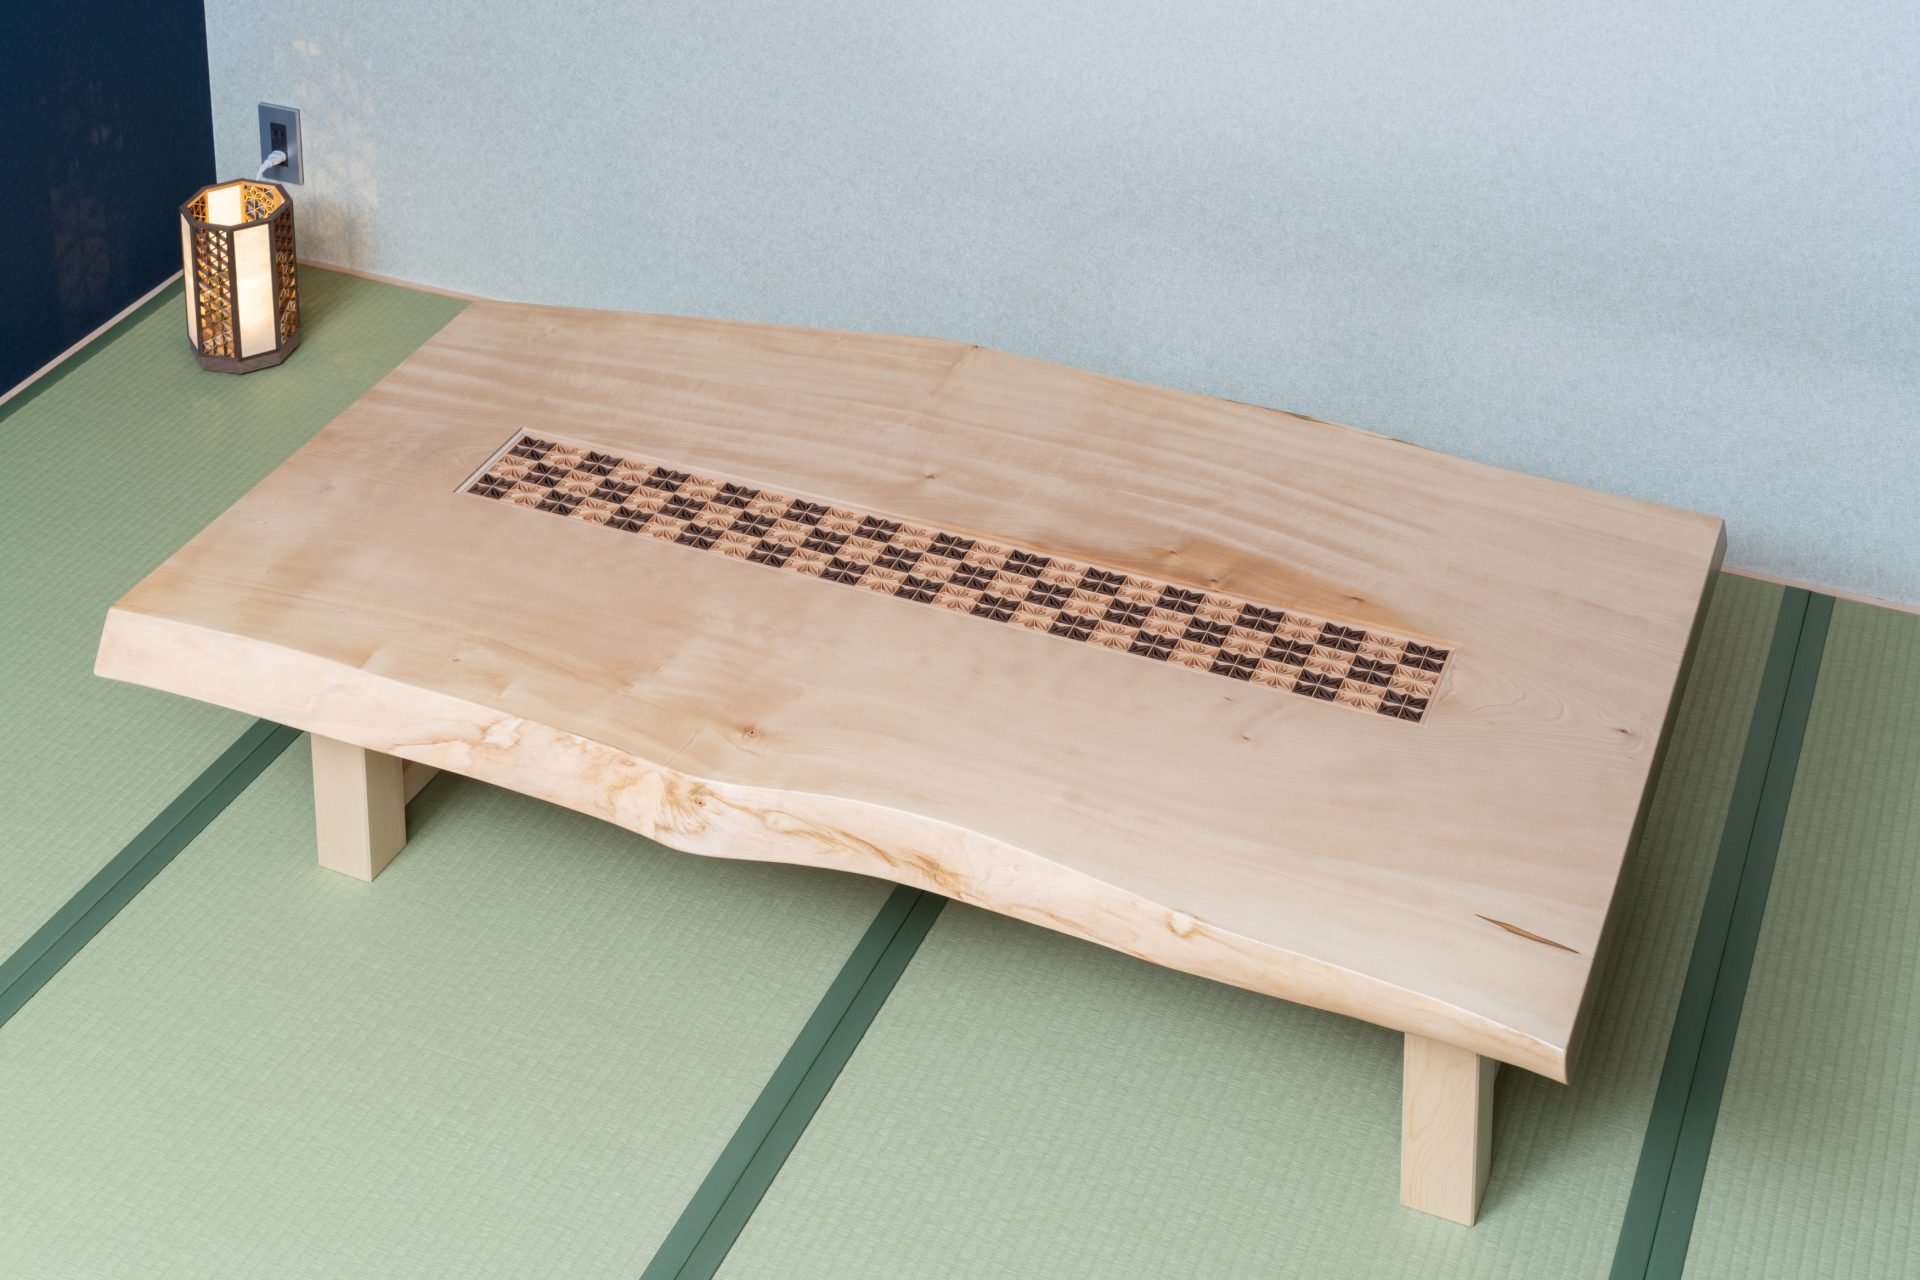 ストア 組子 組子細工 伝統工芸品 座卓 テーブル - 机/テーブル